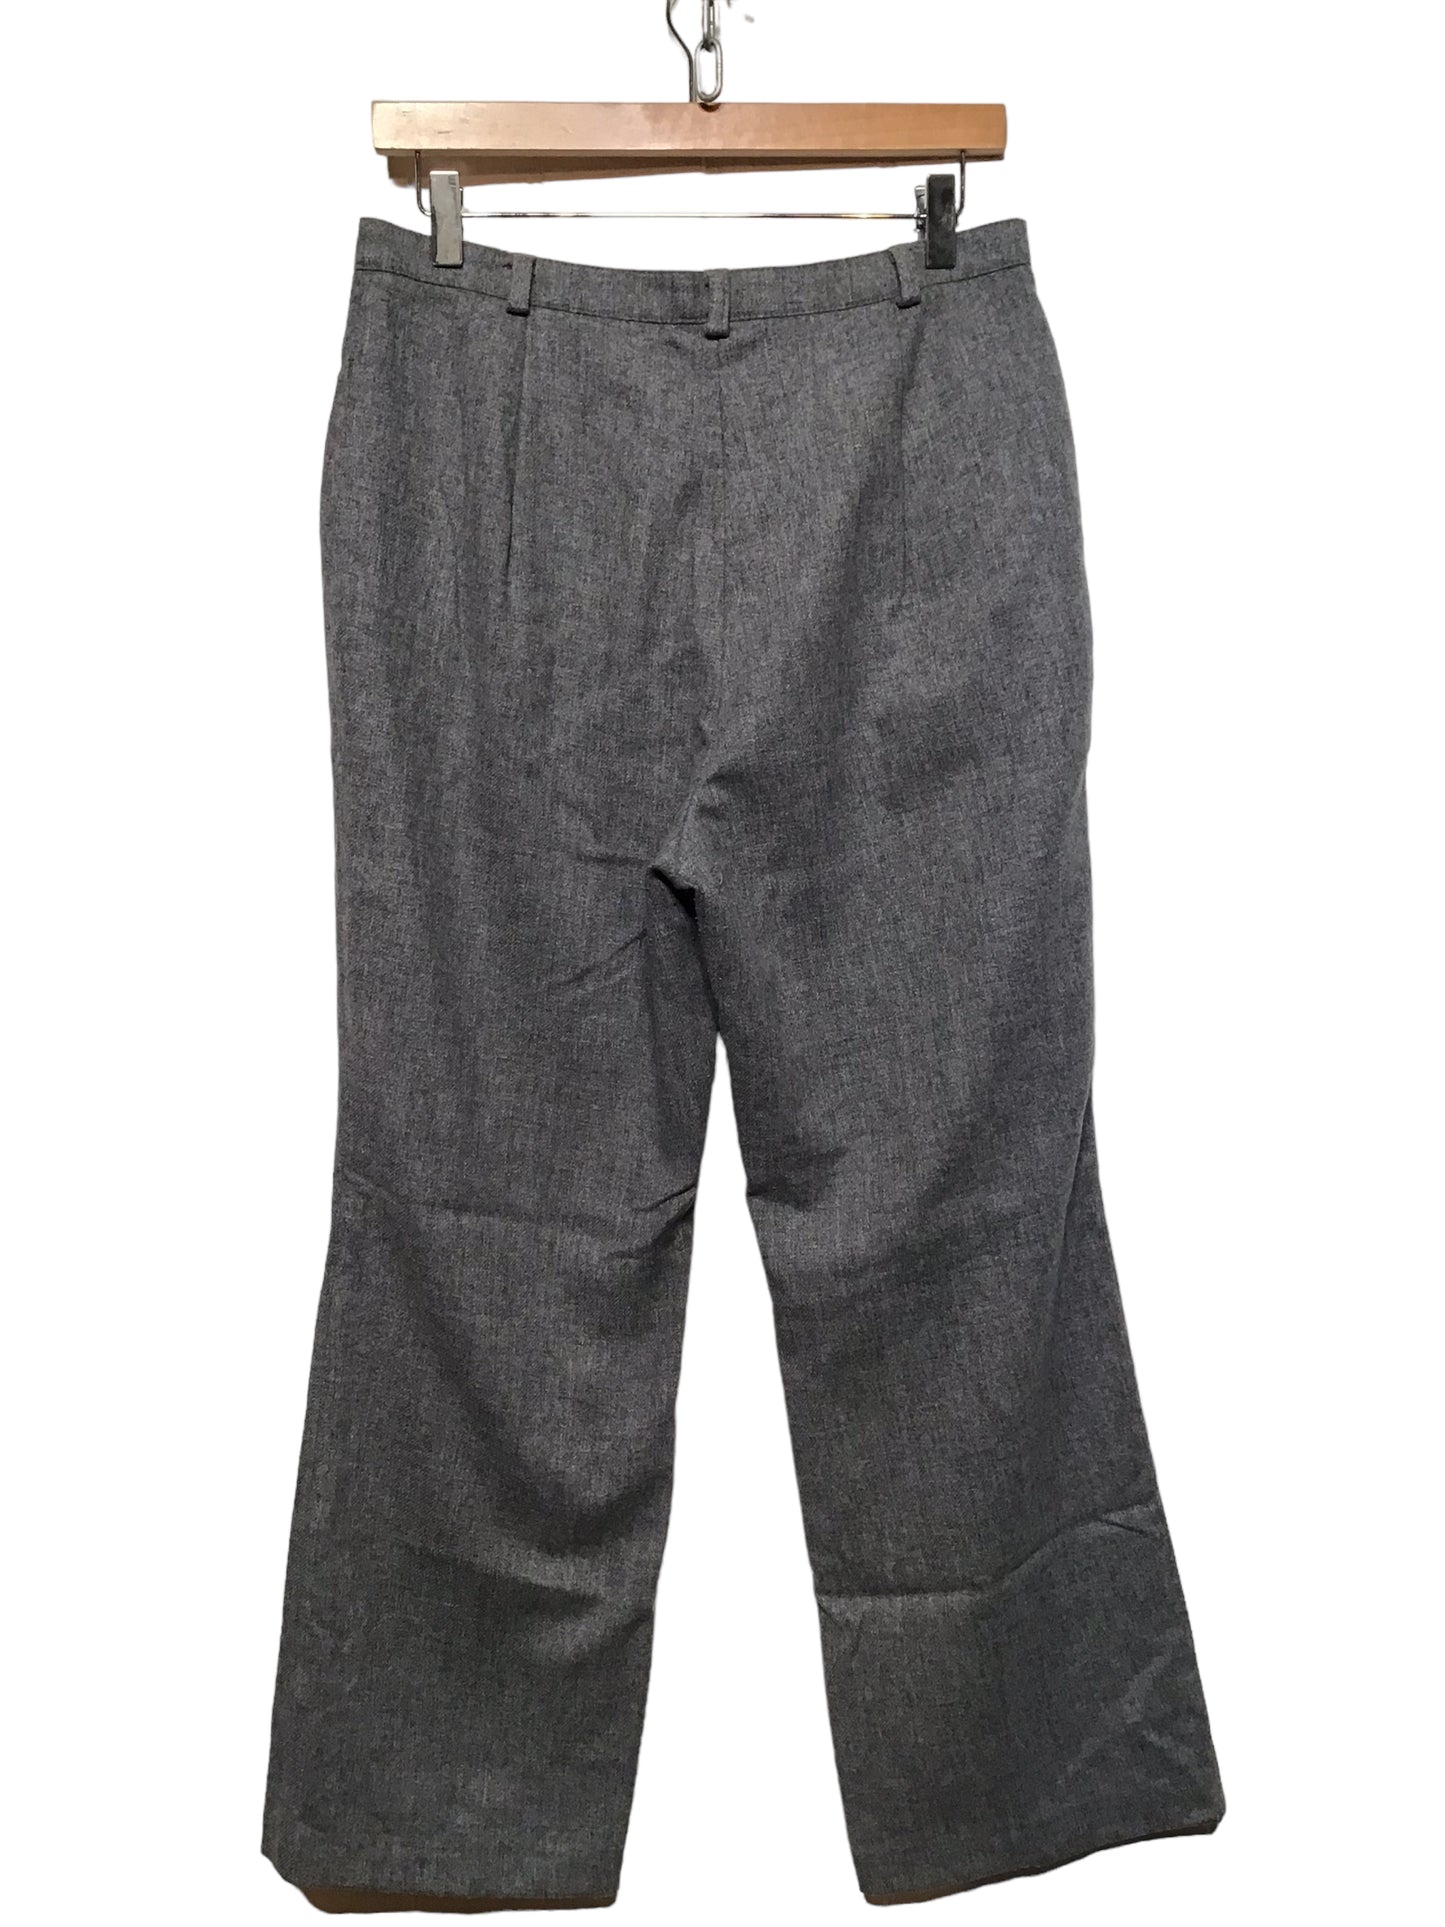 M&S Woollen Trousers (Size L)